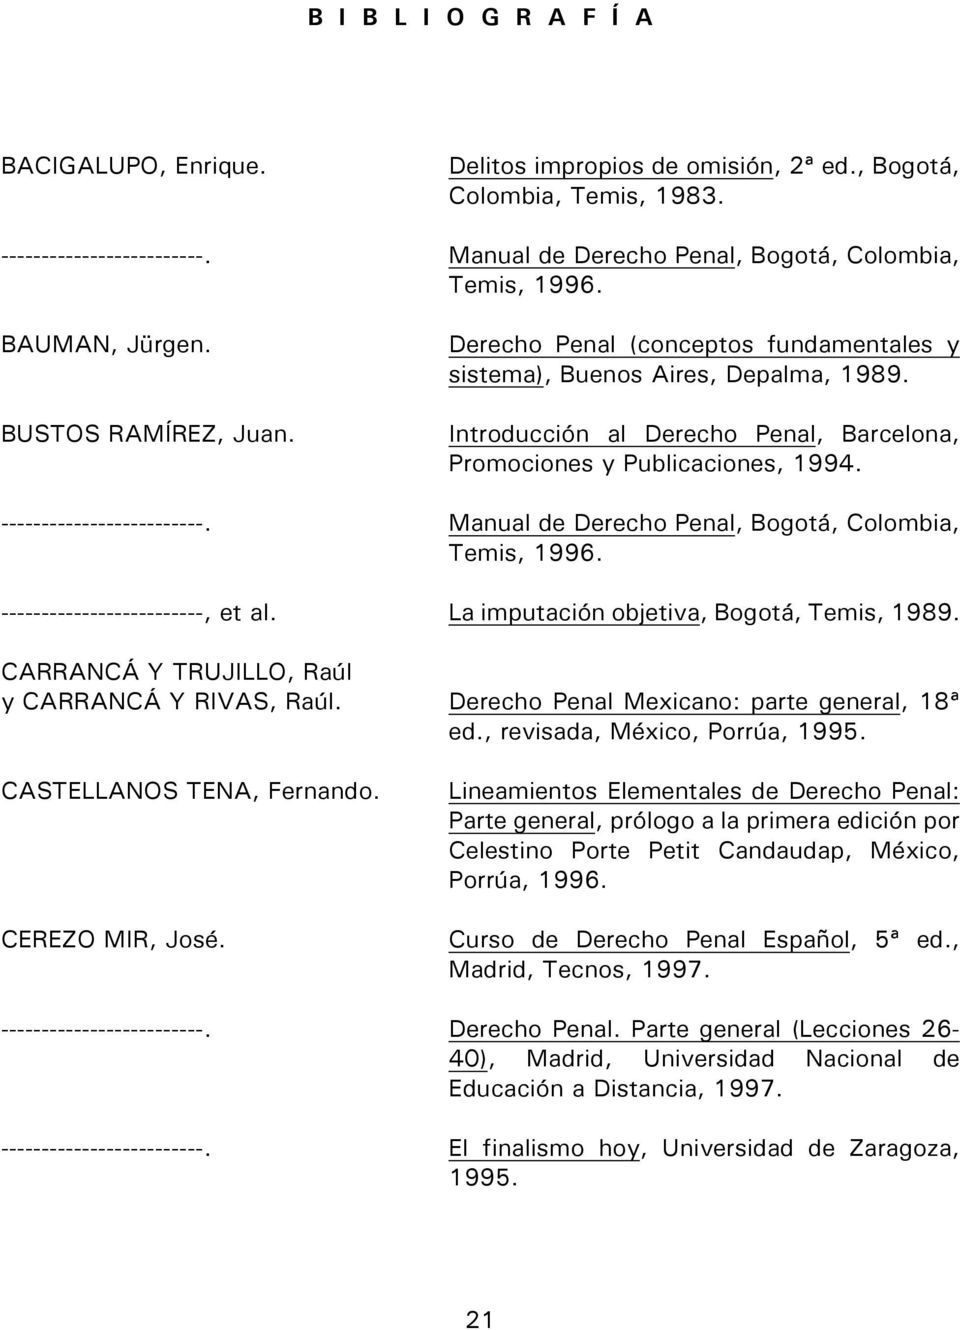 -------------------------. Manual de Derecho Penal, Bogotá, Colombia, Temis, 1996. -------------------------, et al. La imputación objetiva, Bogotá, Temis, 1989.